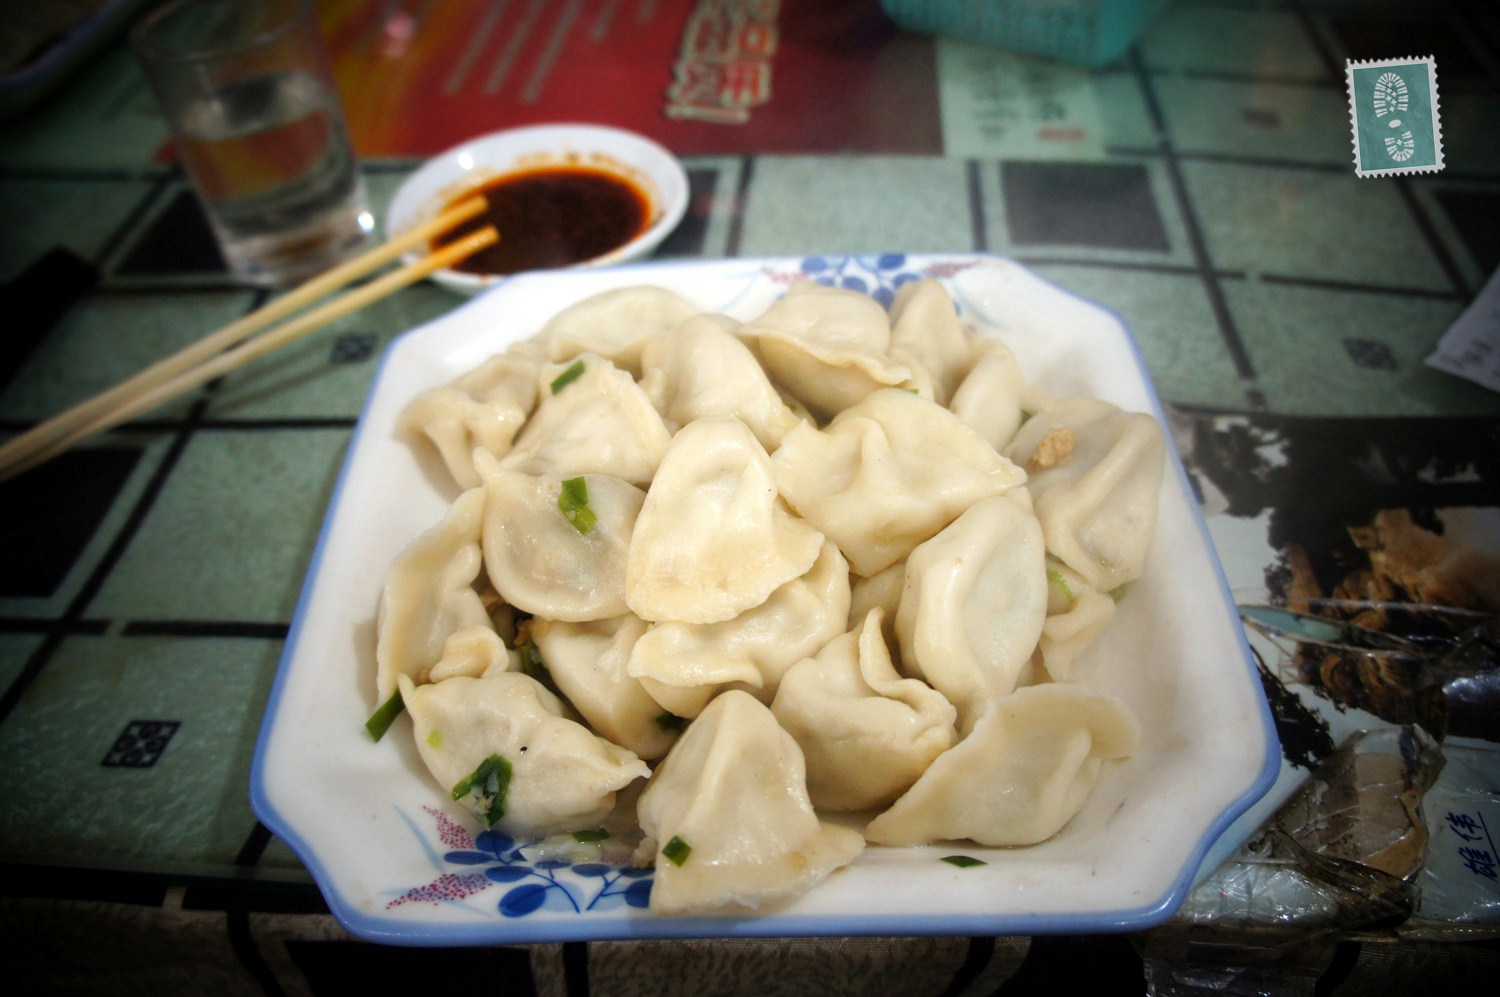 Plate of Chinese jiaozi dumplings